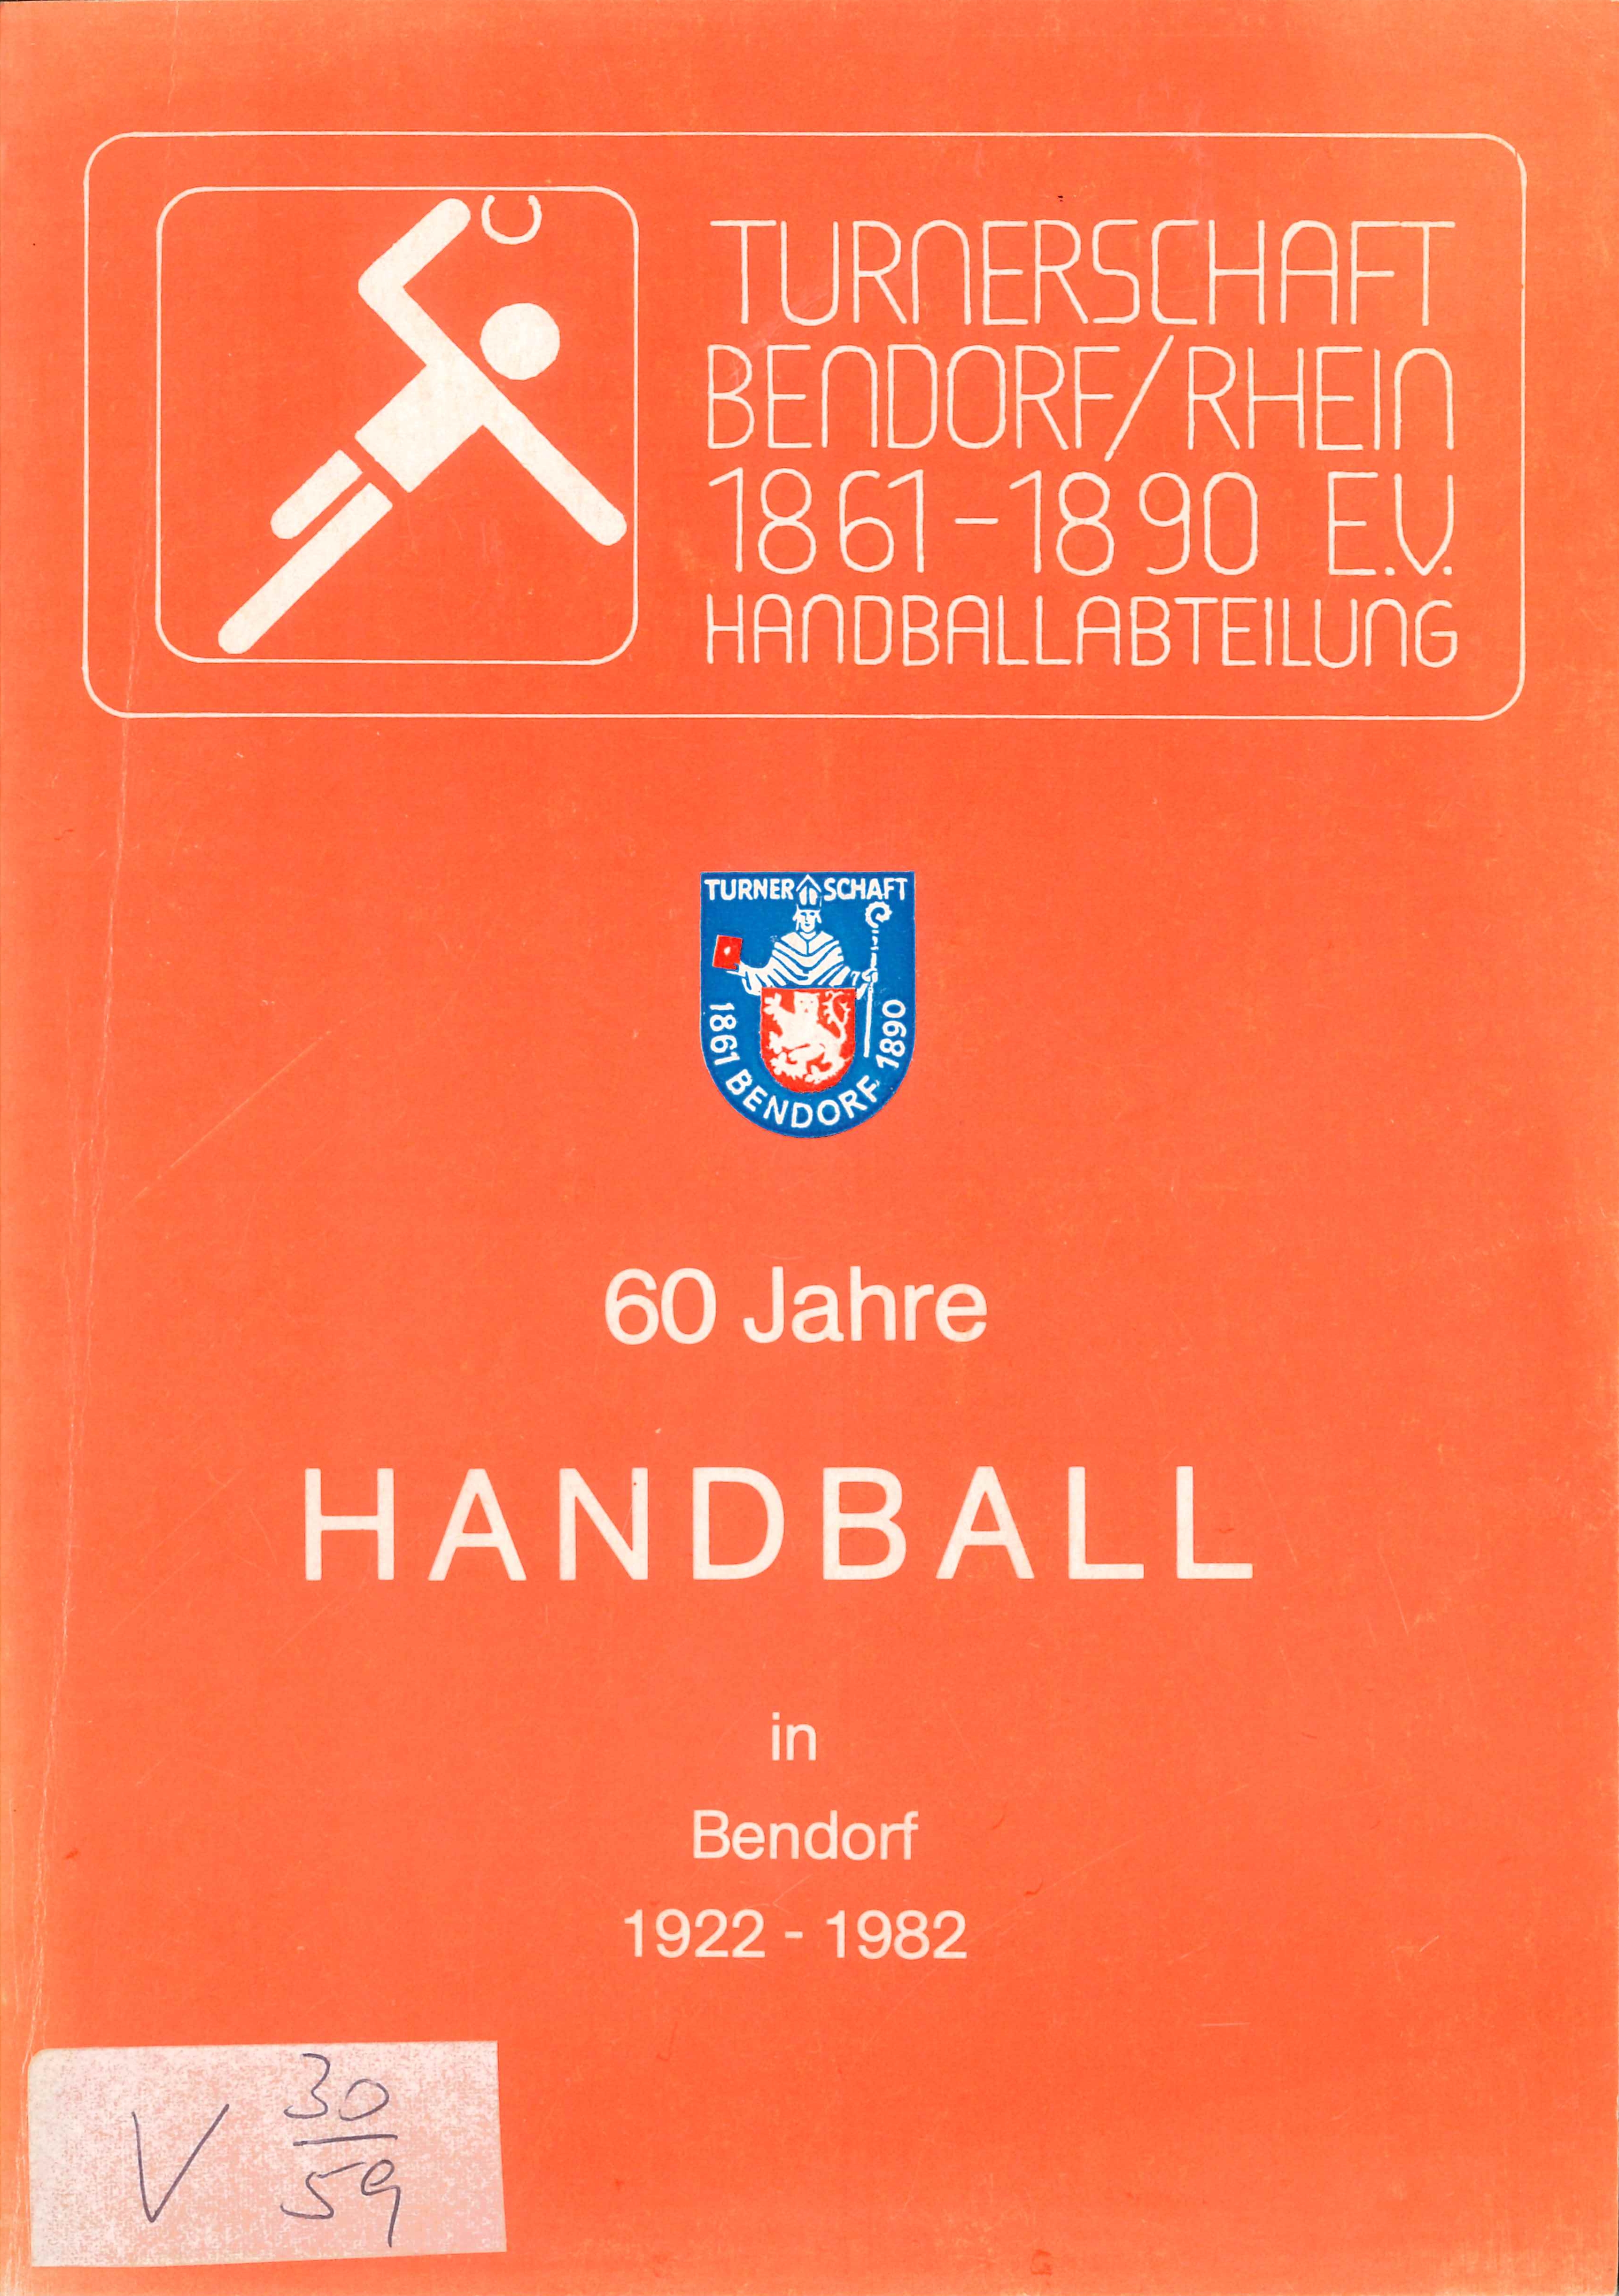 Festschrift 60 Jahre Handball Turnerschaft Bendorf (Rheinisches Eisenkunstguss-Museum CC BY-NC-SA)